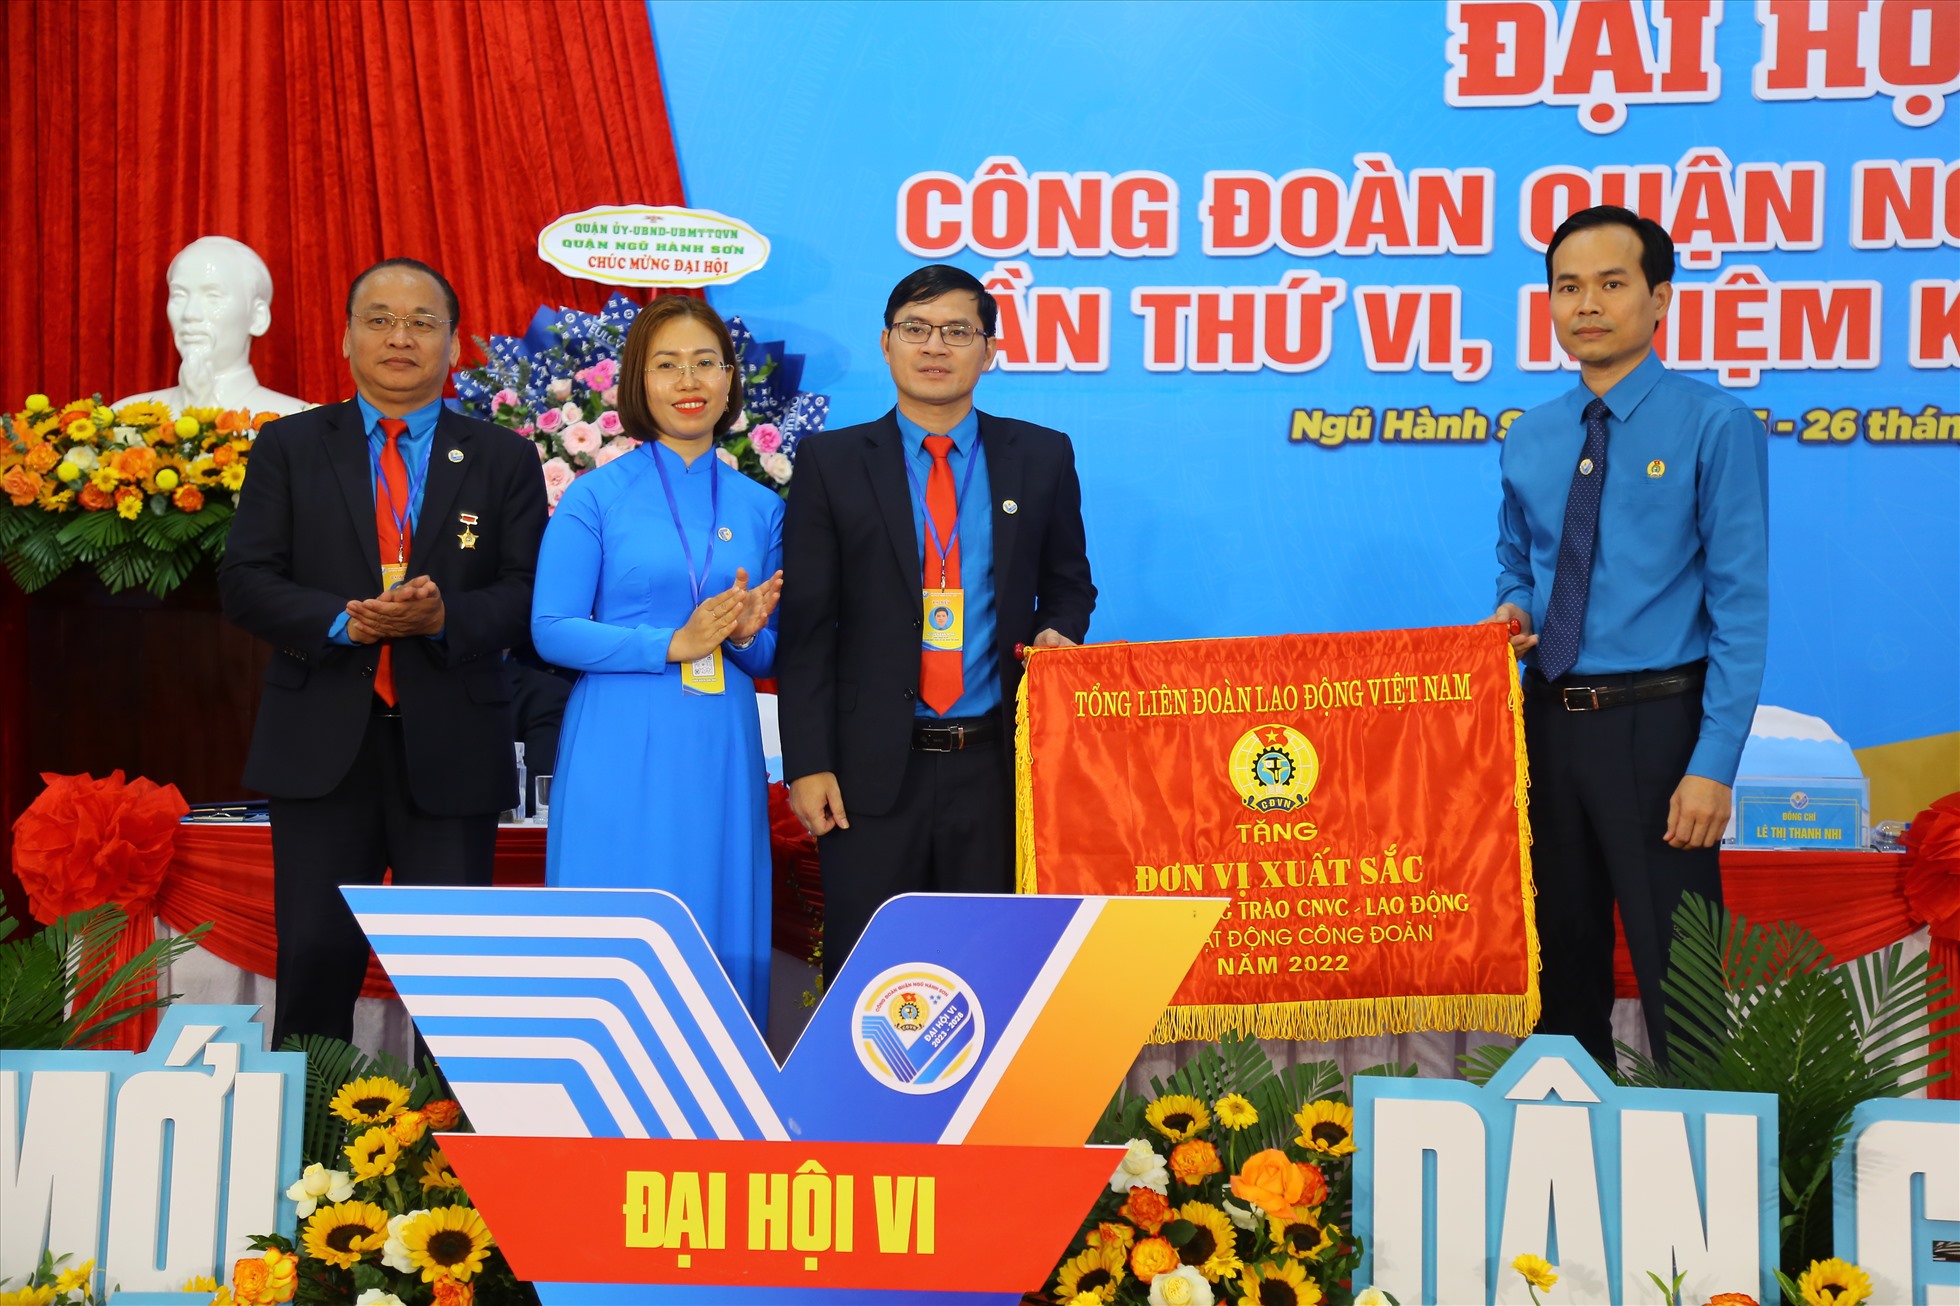 Ông Nguyễn Duy Minh, Chủ tịch Liên đoàn Lao động thành phố Đà Nẵng trao cờ thi đua cho Liên đoàn Lao động quận Ngũ Hành Sơn. Ảnh: Tường Minh